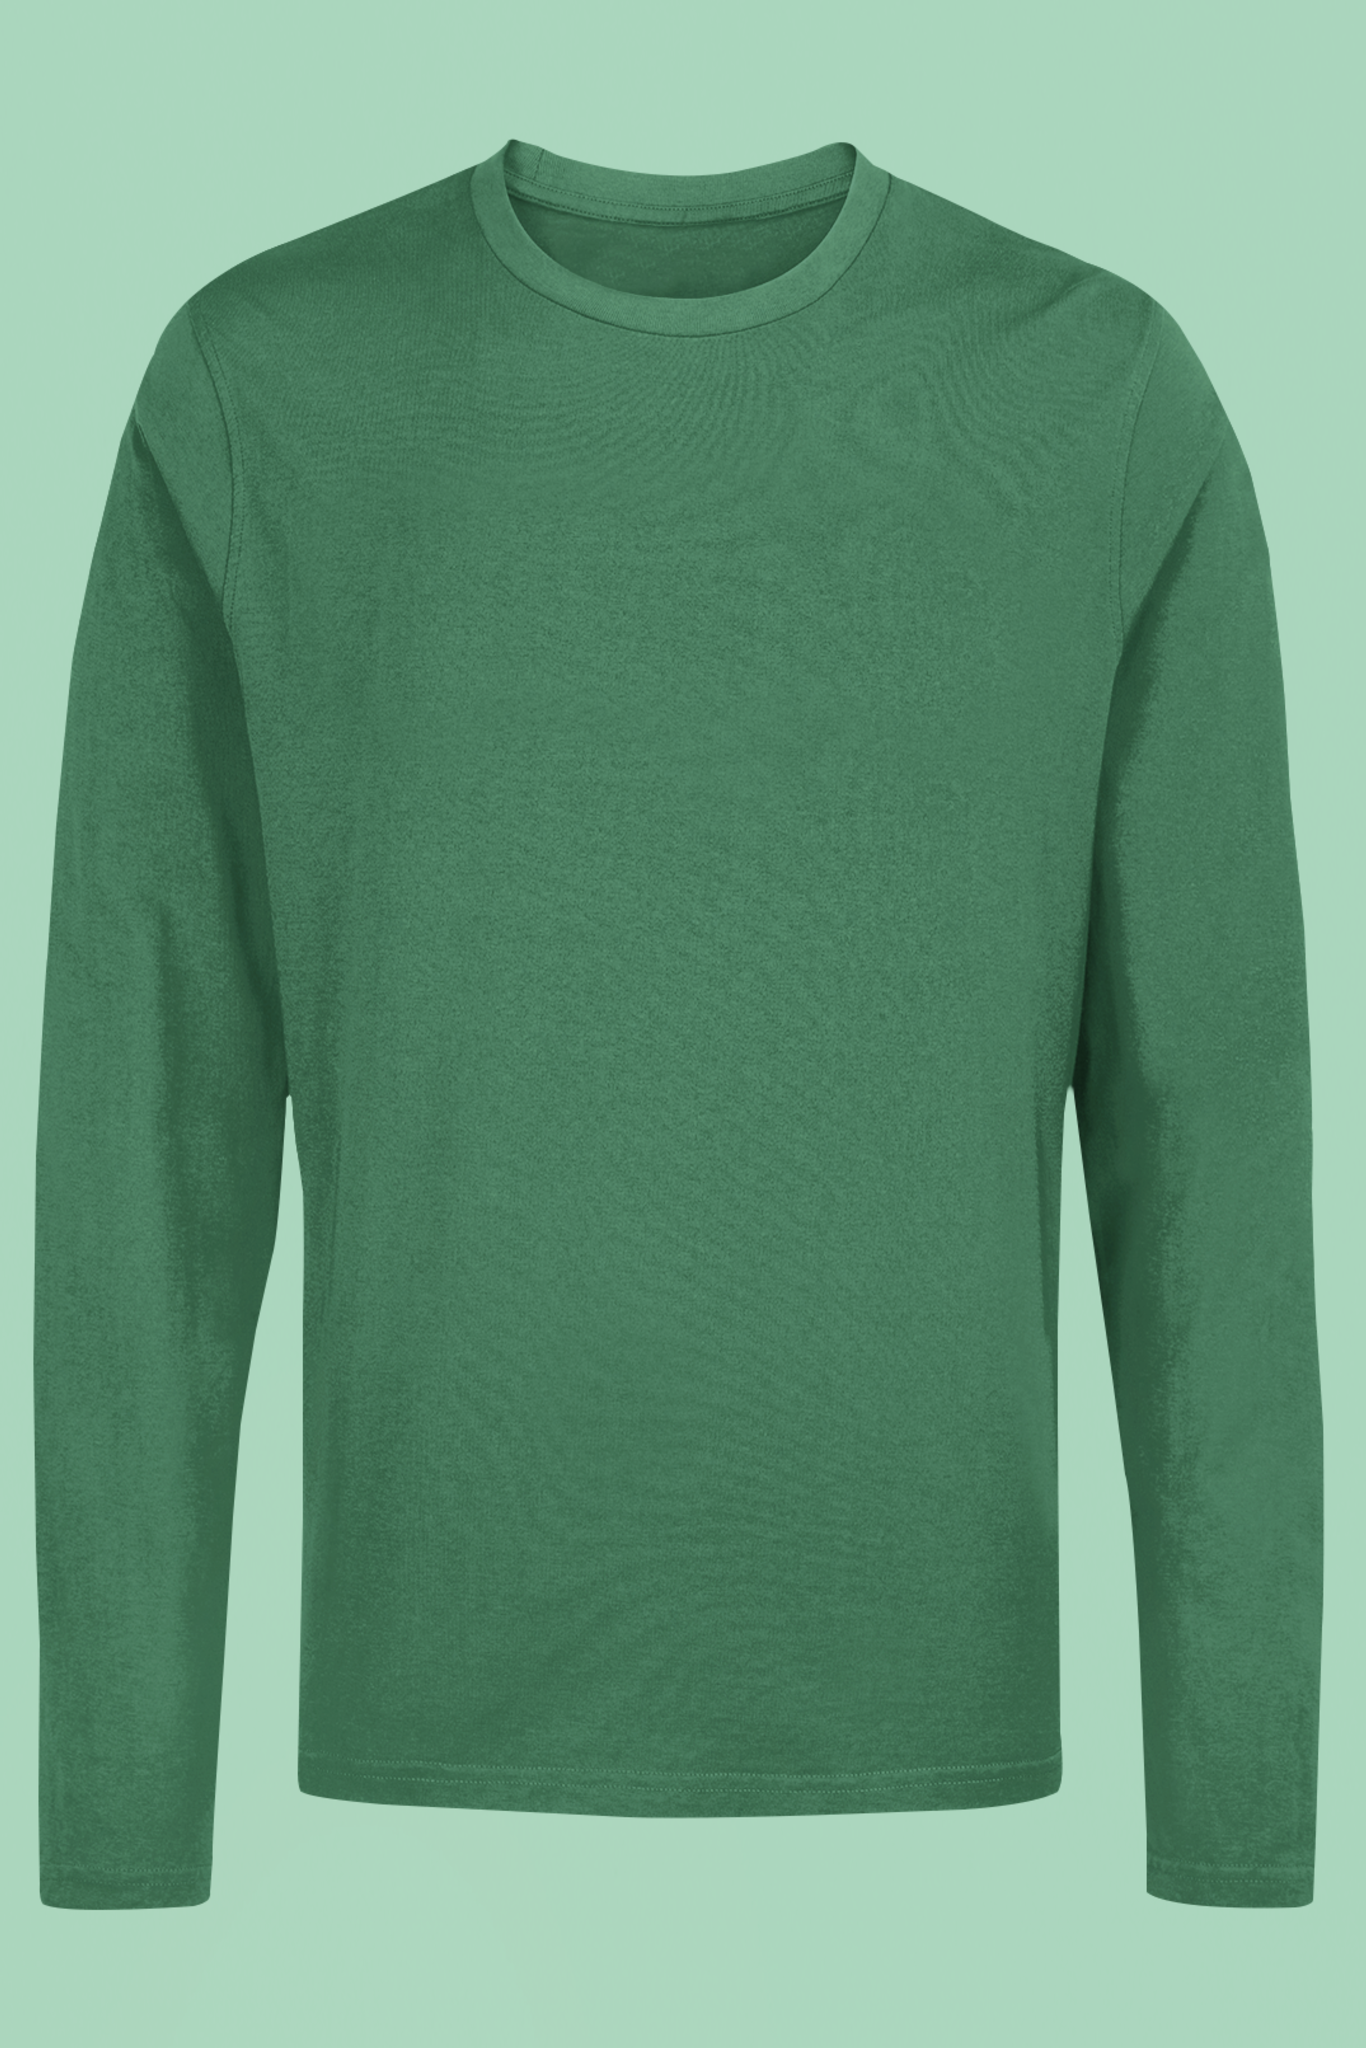 Men's Full Sleeve: Green T-Shirt